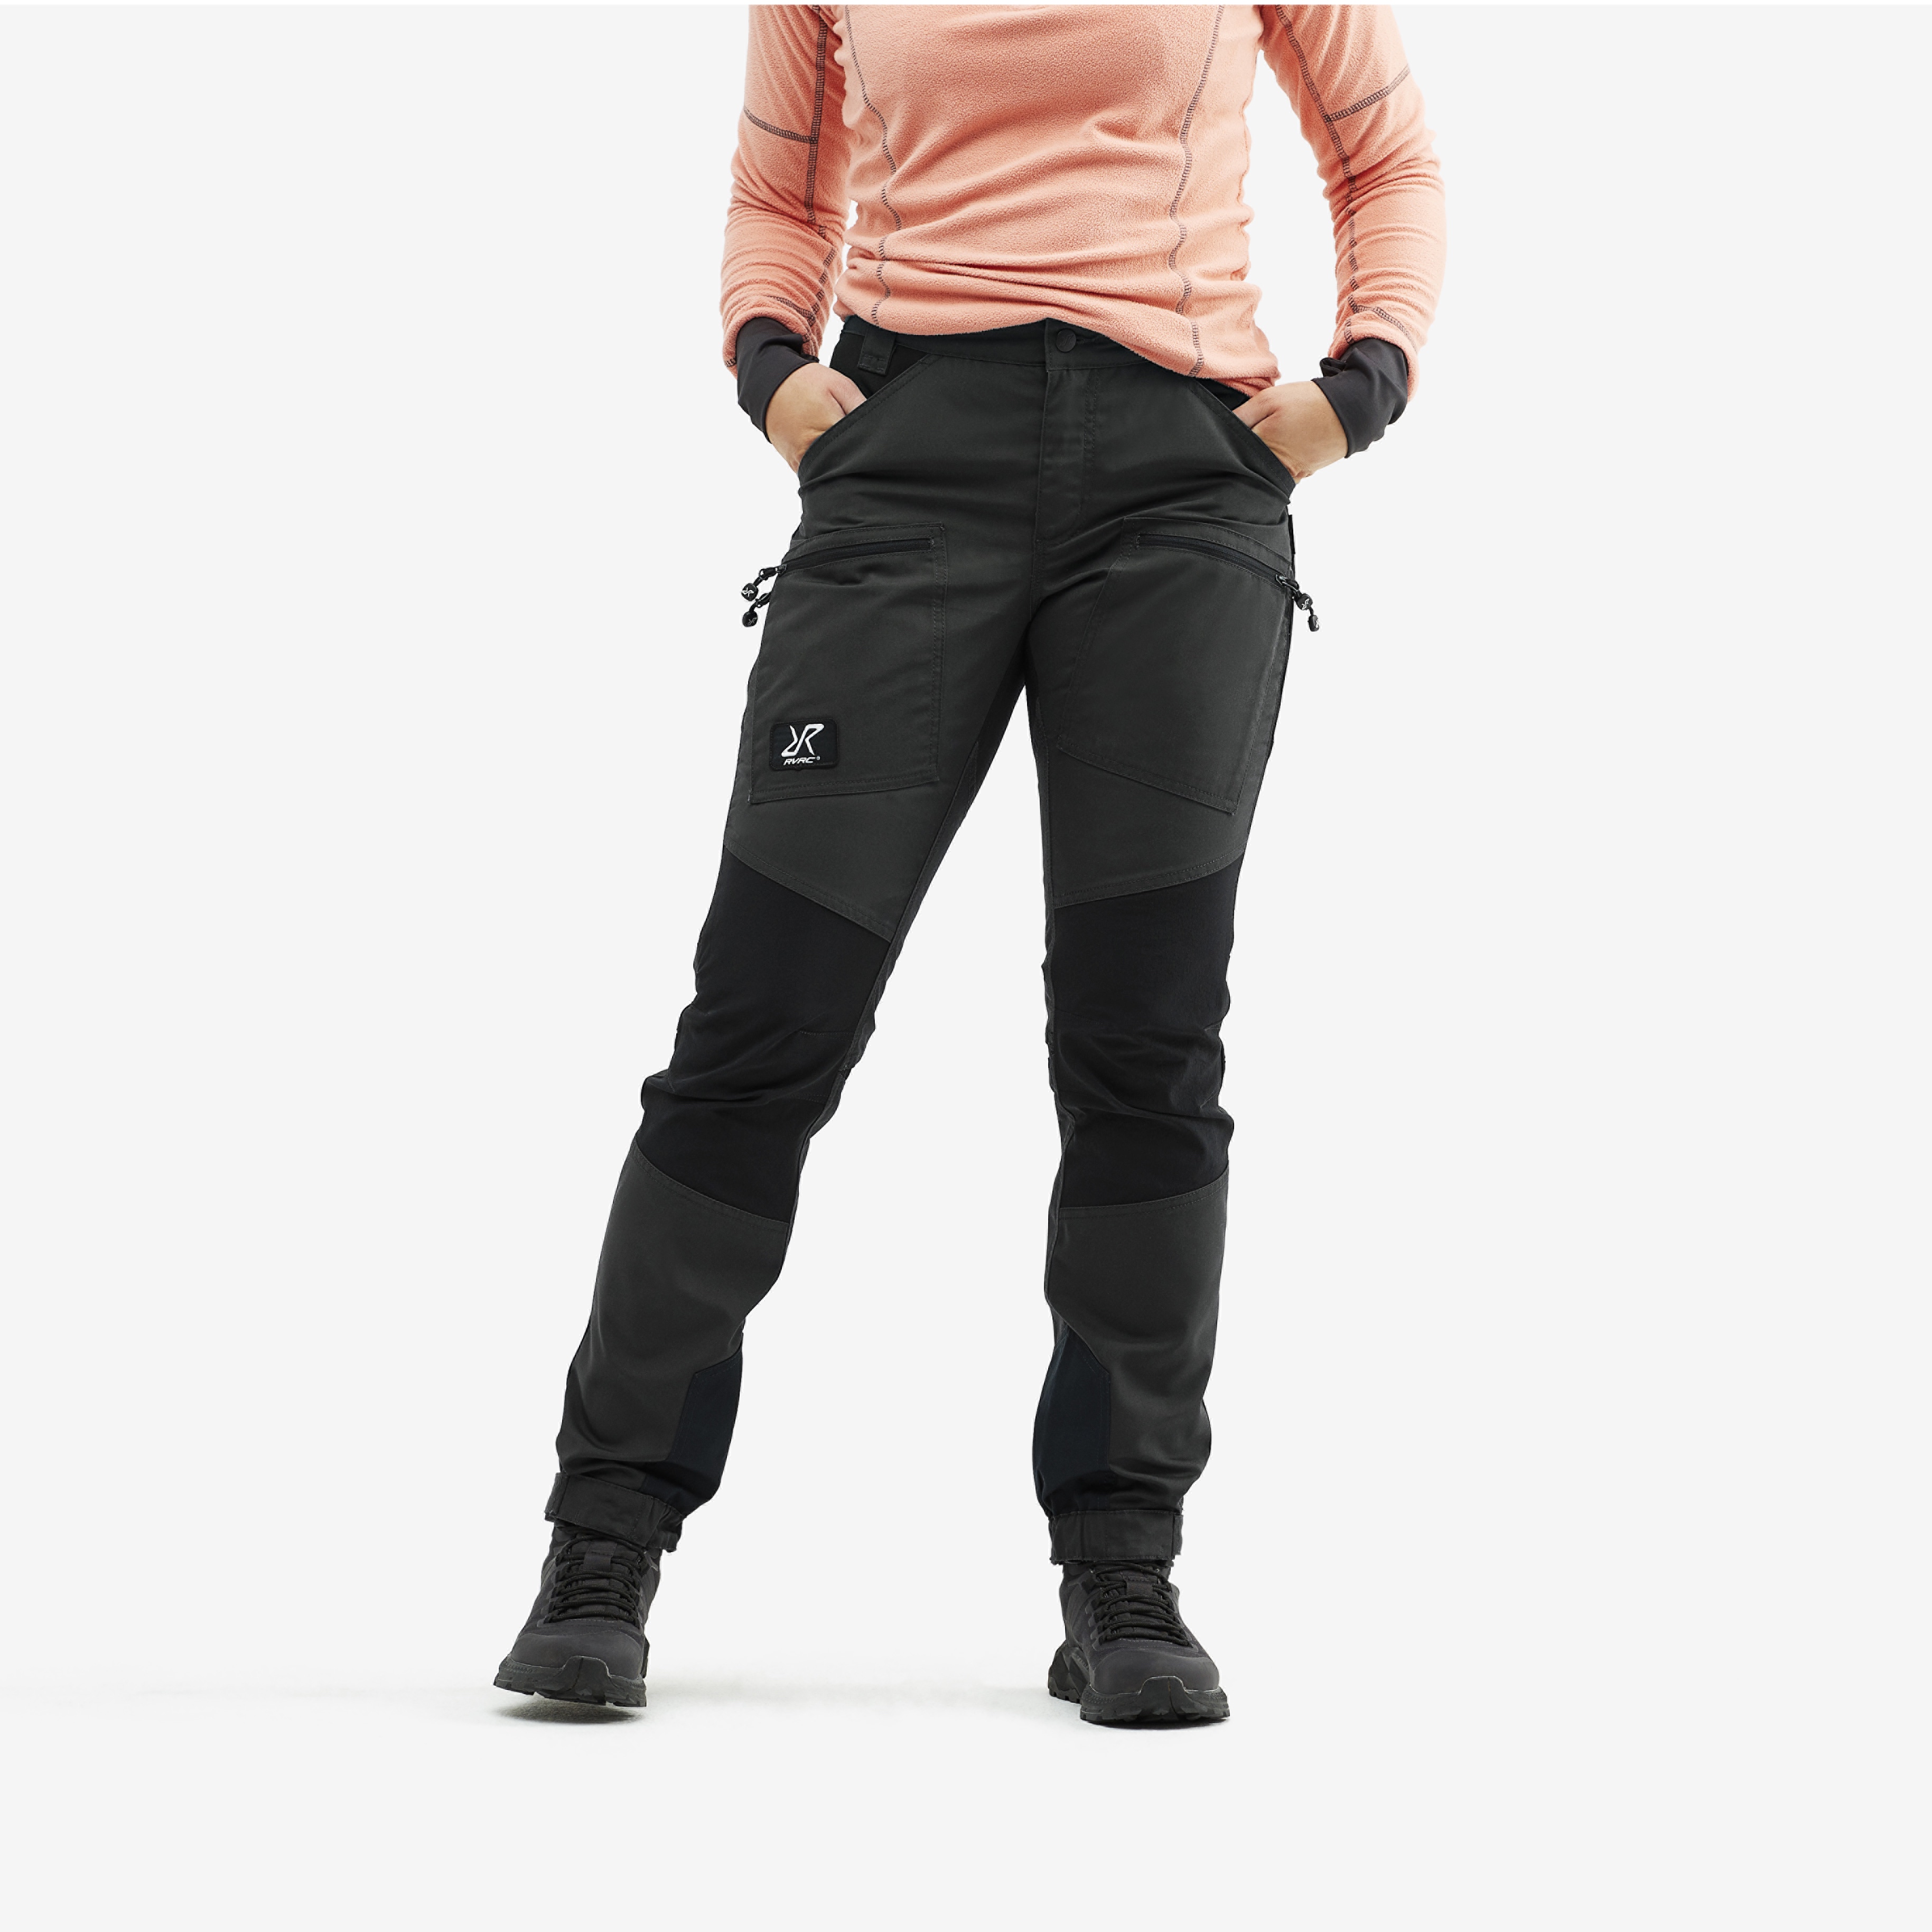 Nordwand Pro Short turistické kalhoty pro ženy v tmavě šedé barvě